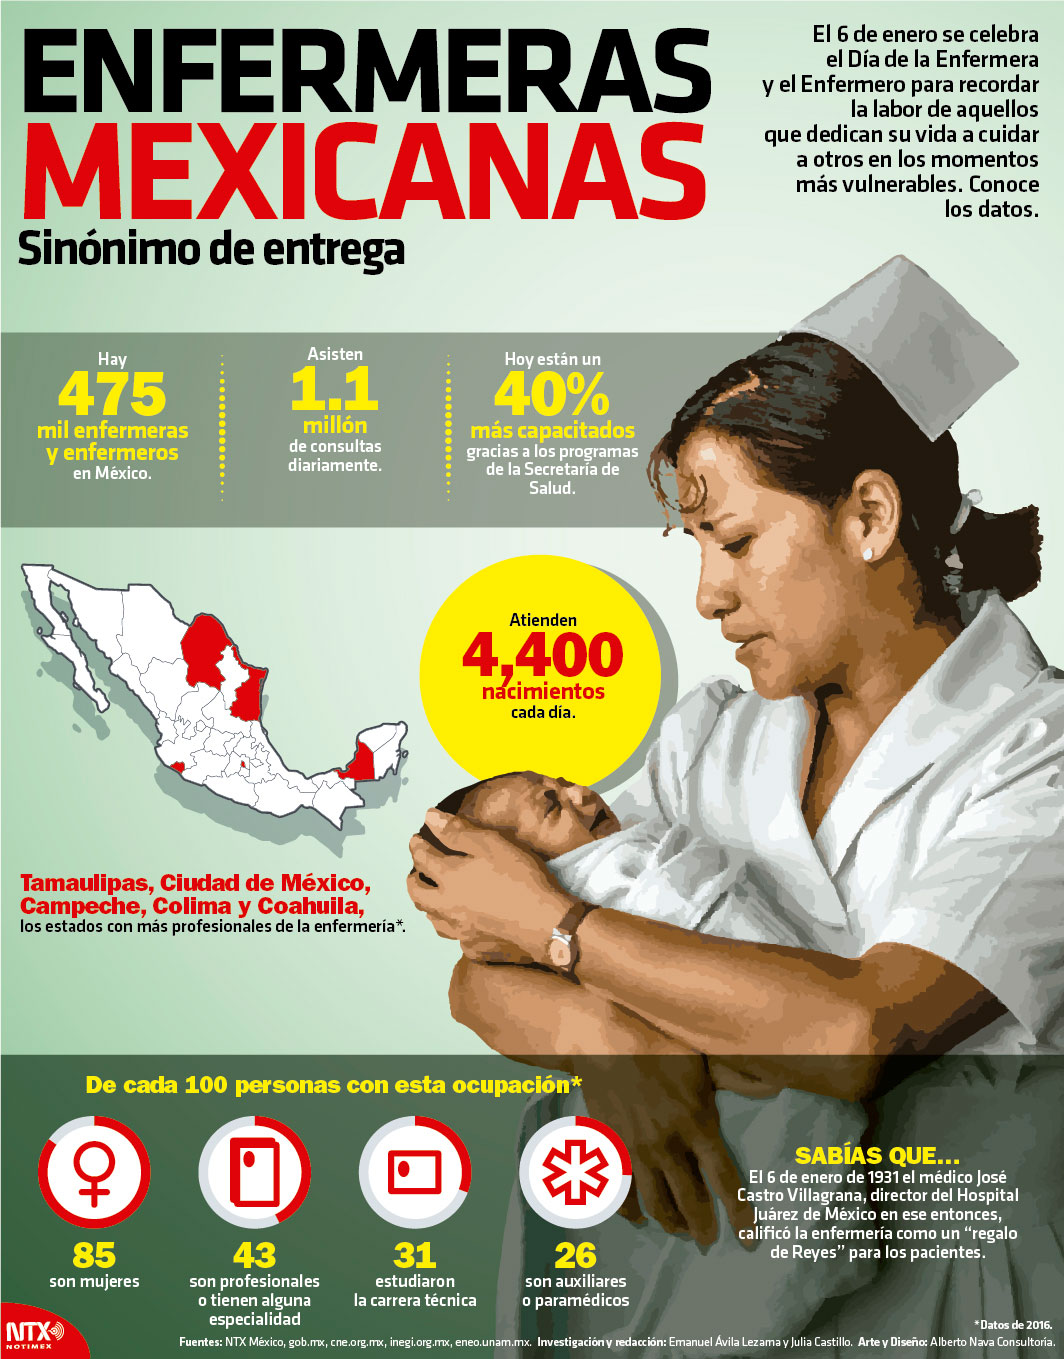 Enfermeras mexicanas, sinnimo de entrega